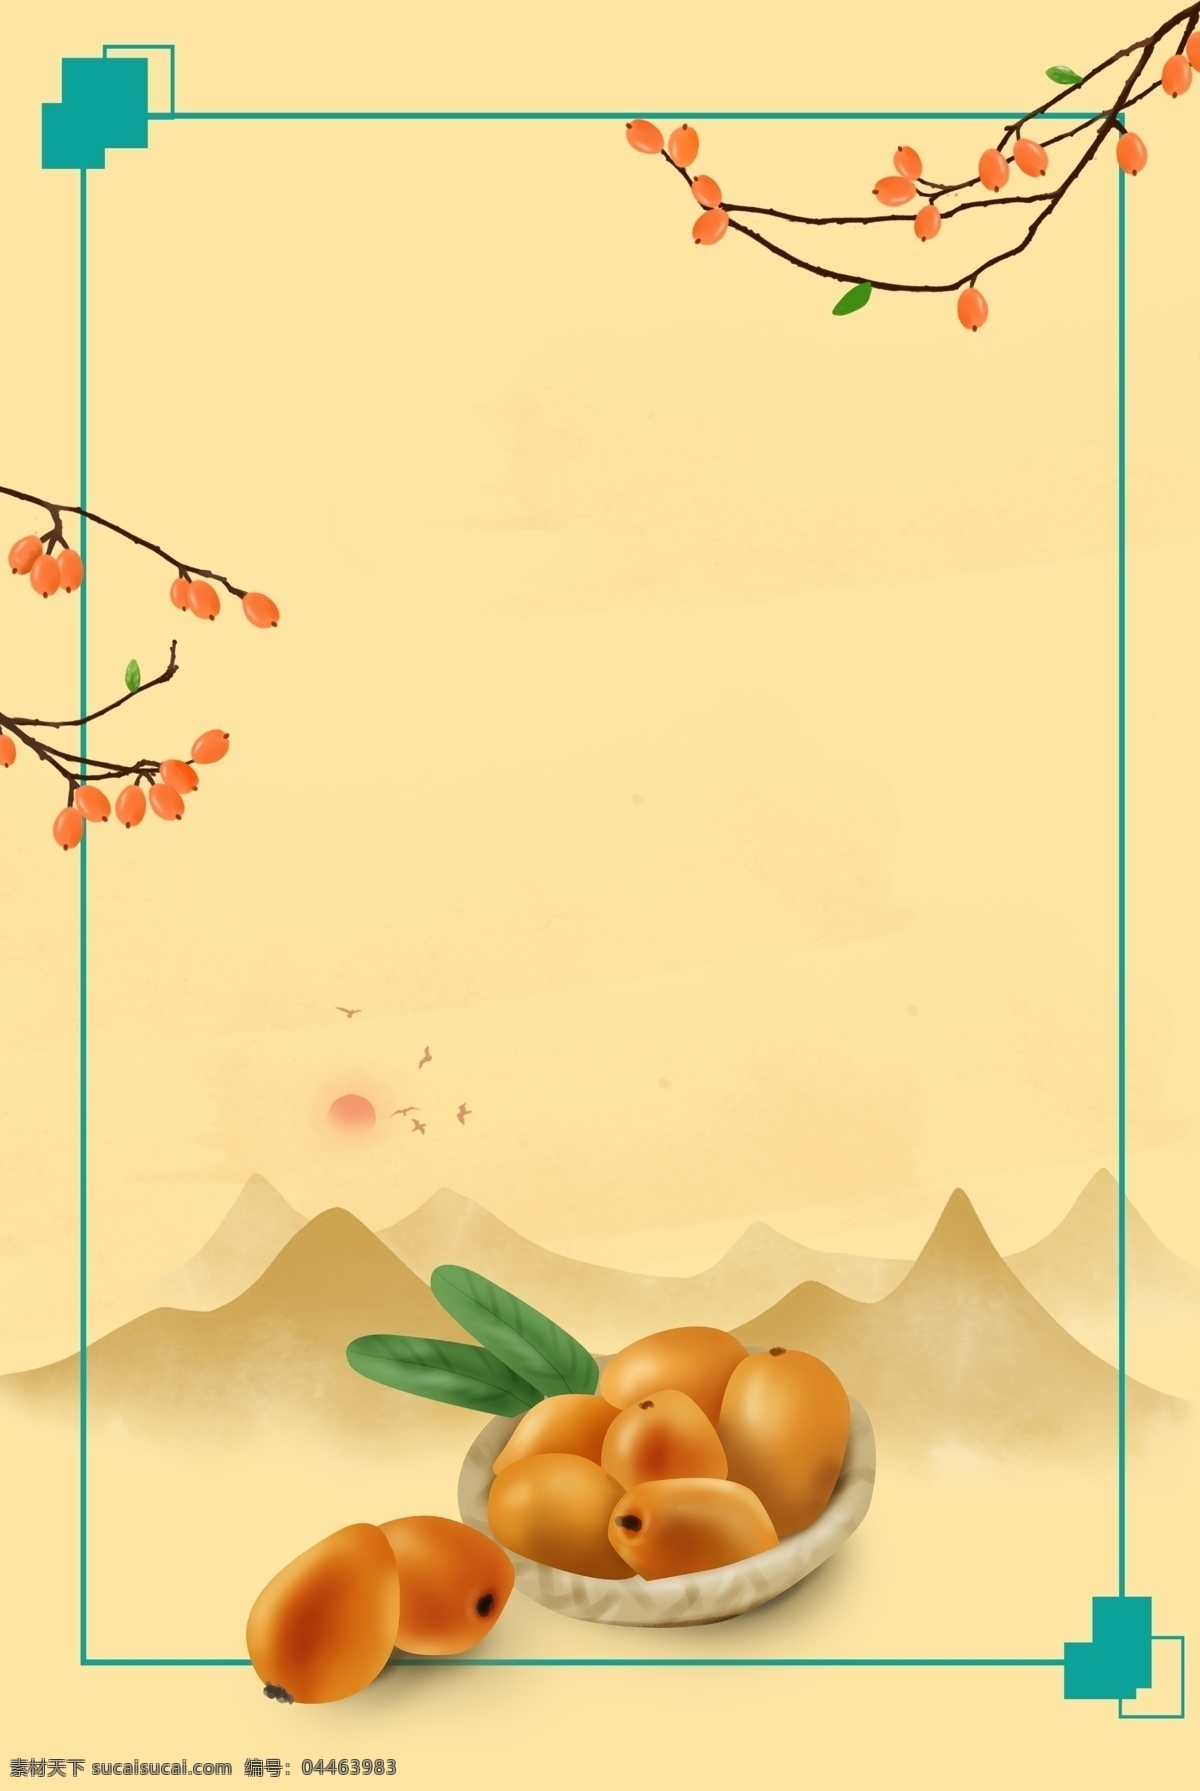 三月 水果 枇杷 海报 背景 黄色水果背景 黄色水果 枇杷果树 小清新 水果边框